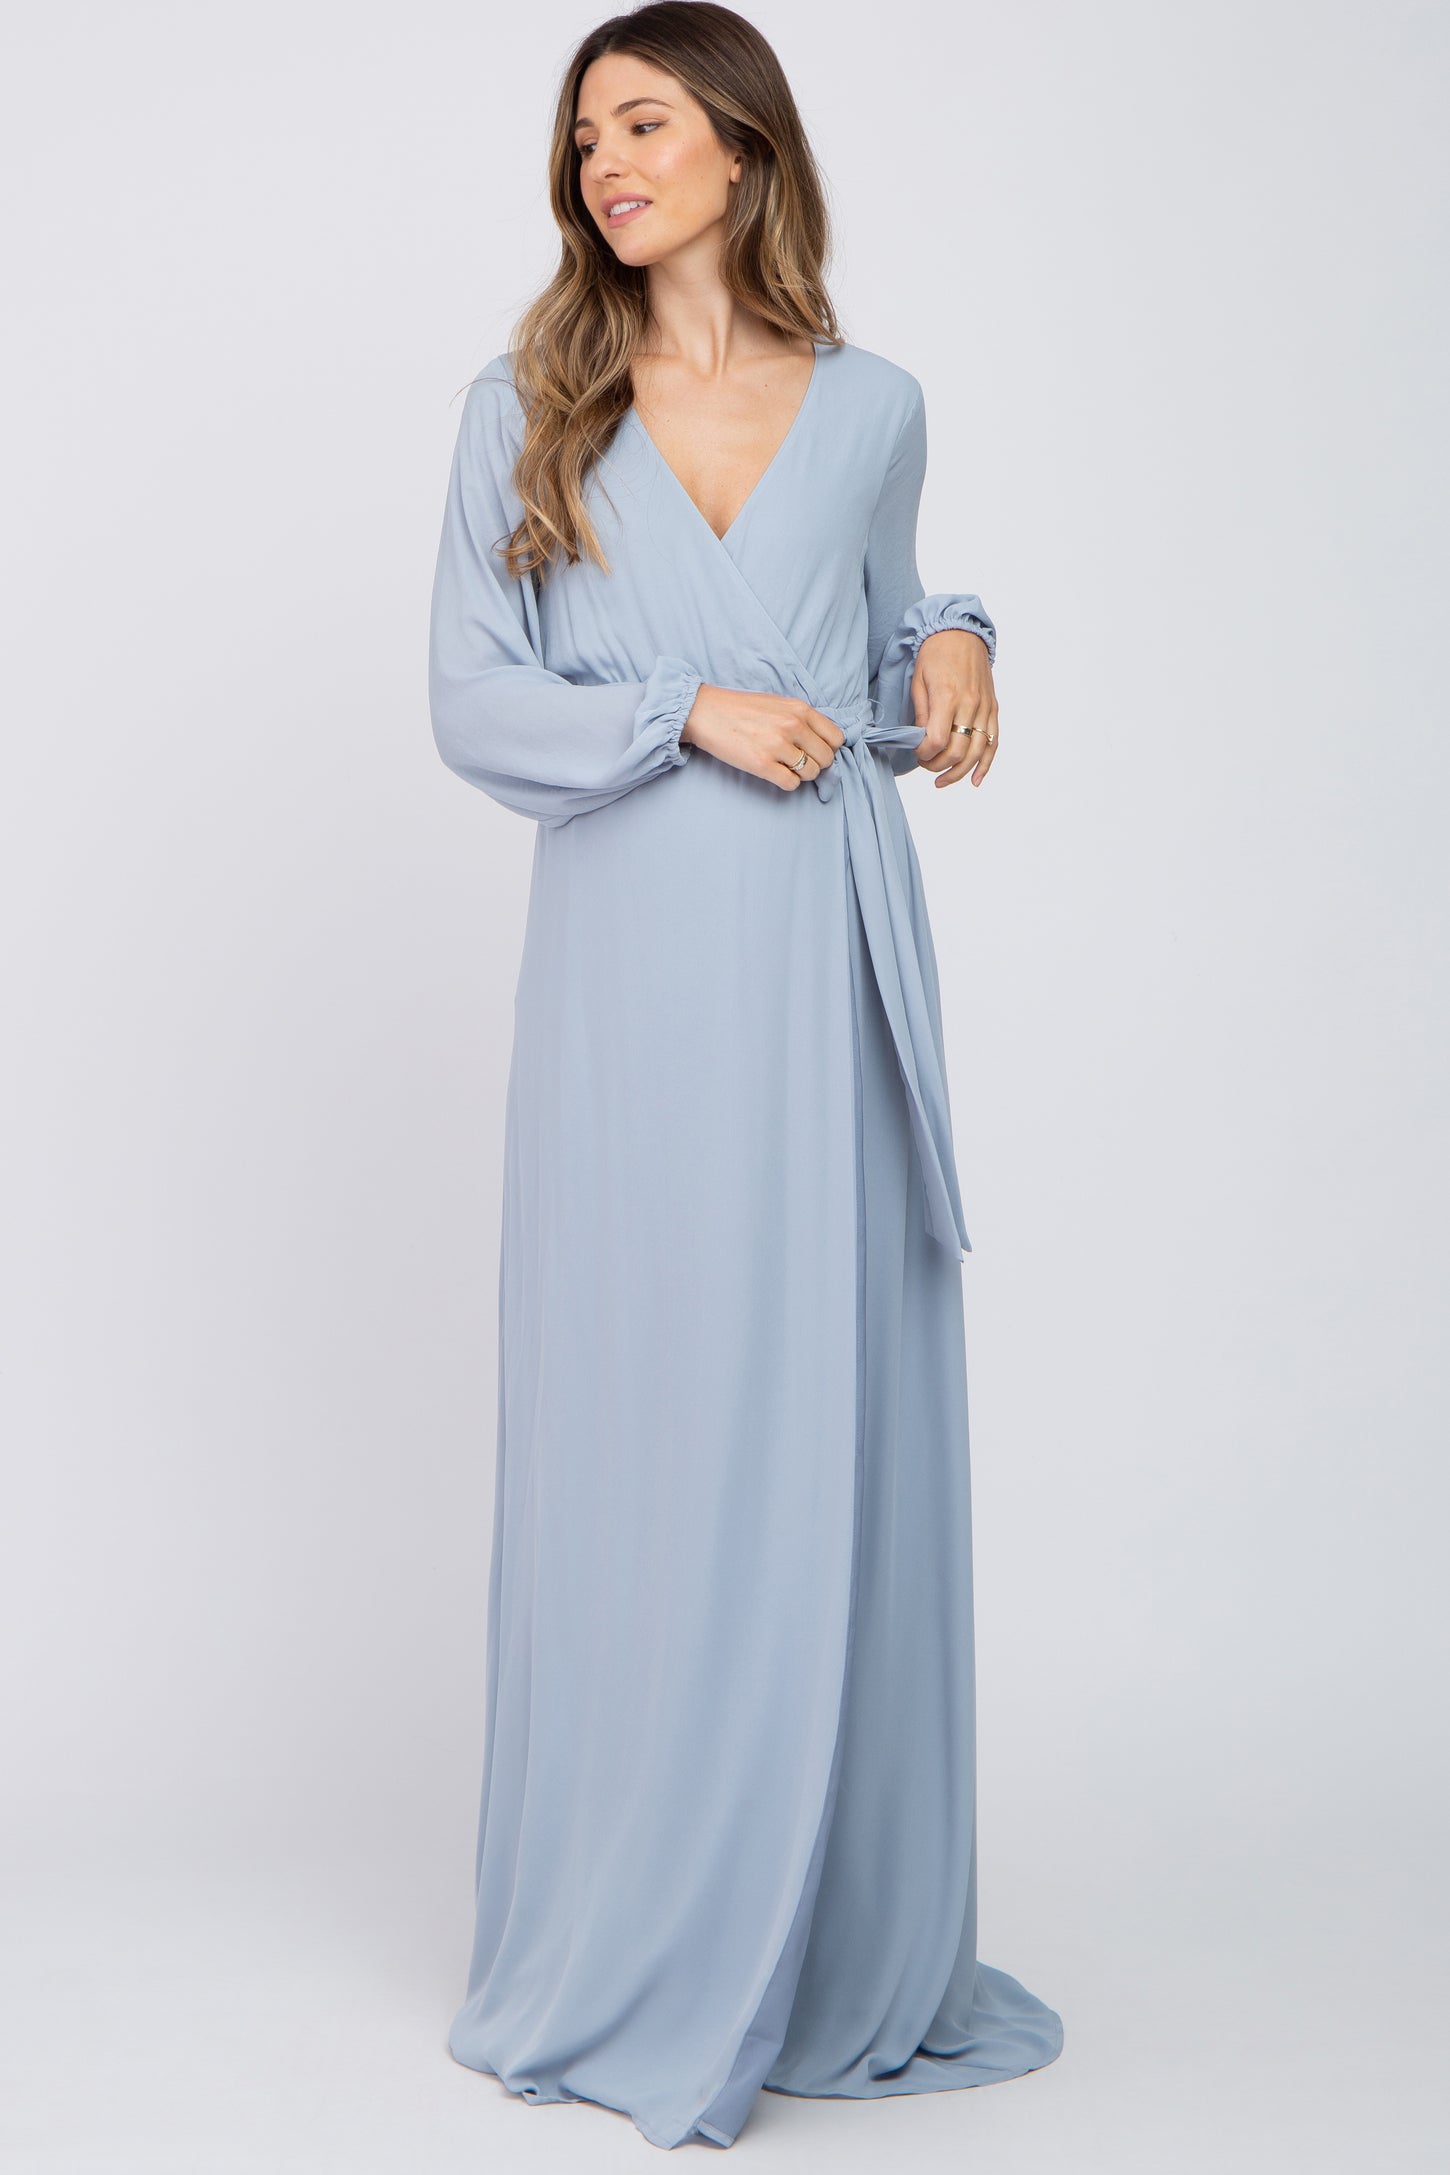 Light Blue Wrap Front Chiffon Maternity Gown– PinkBlush